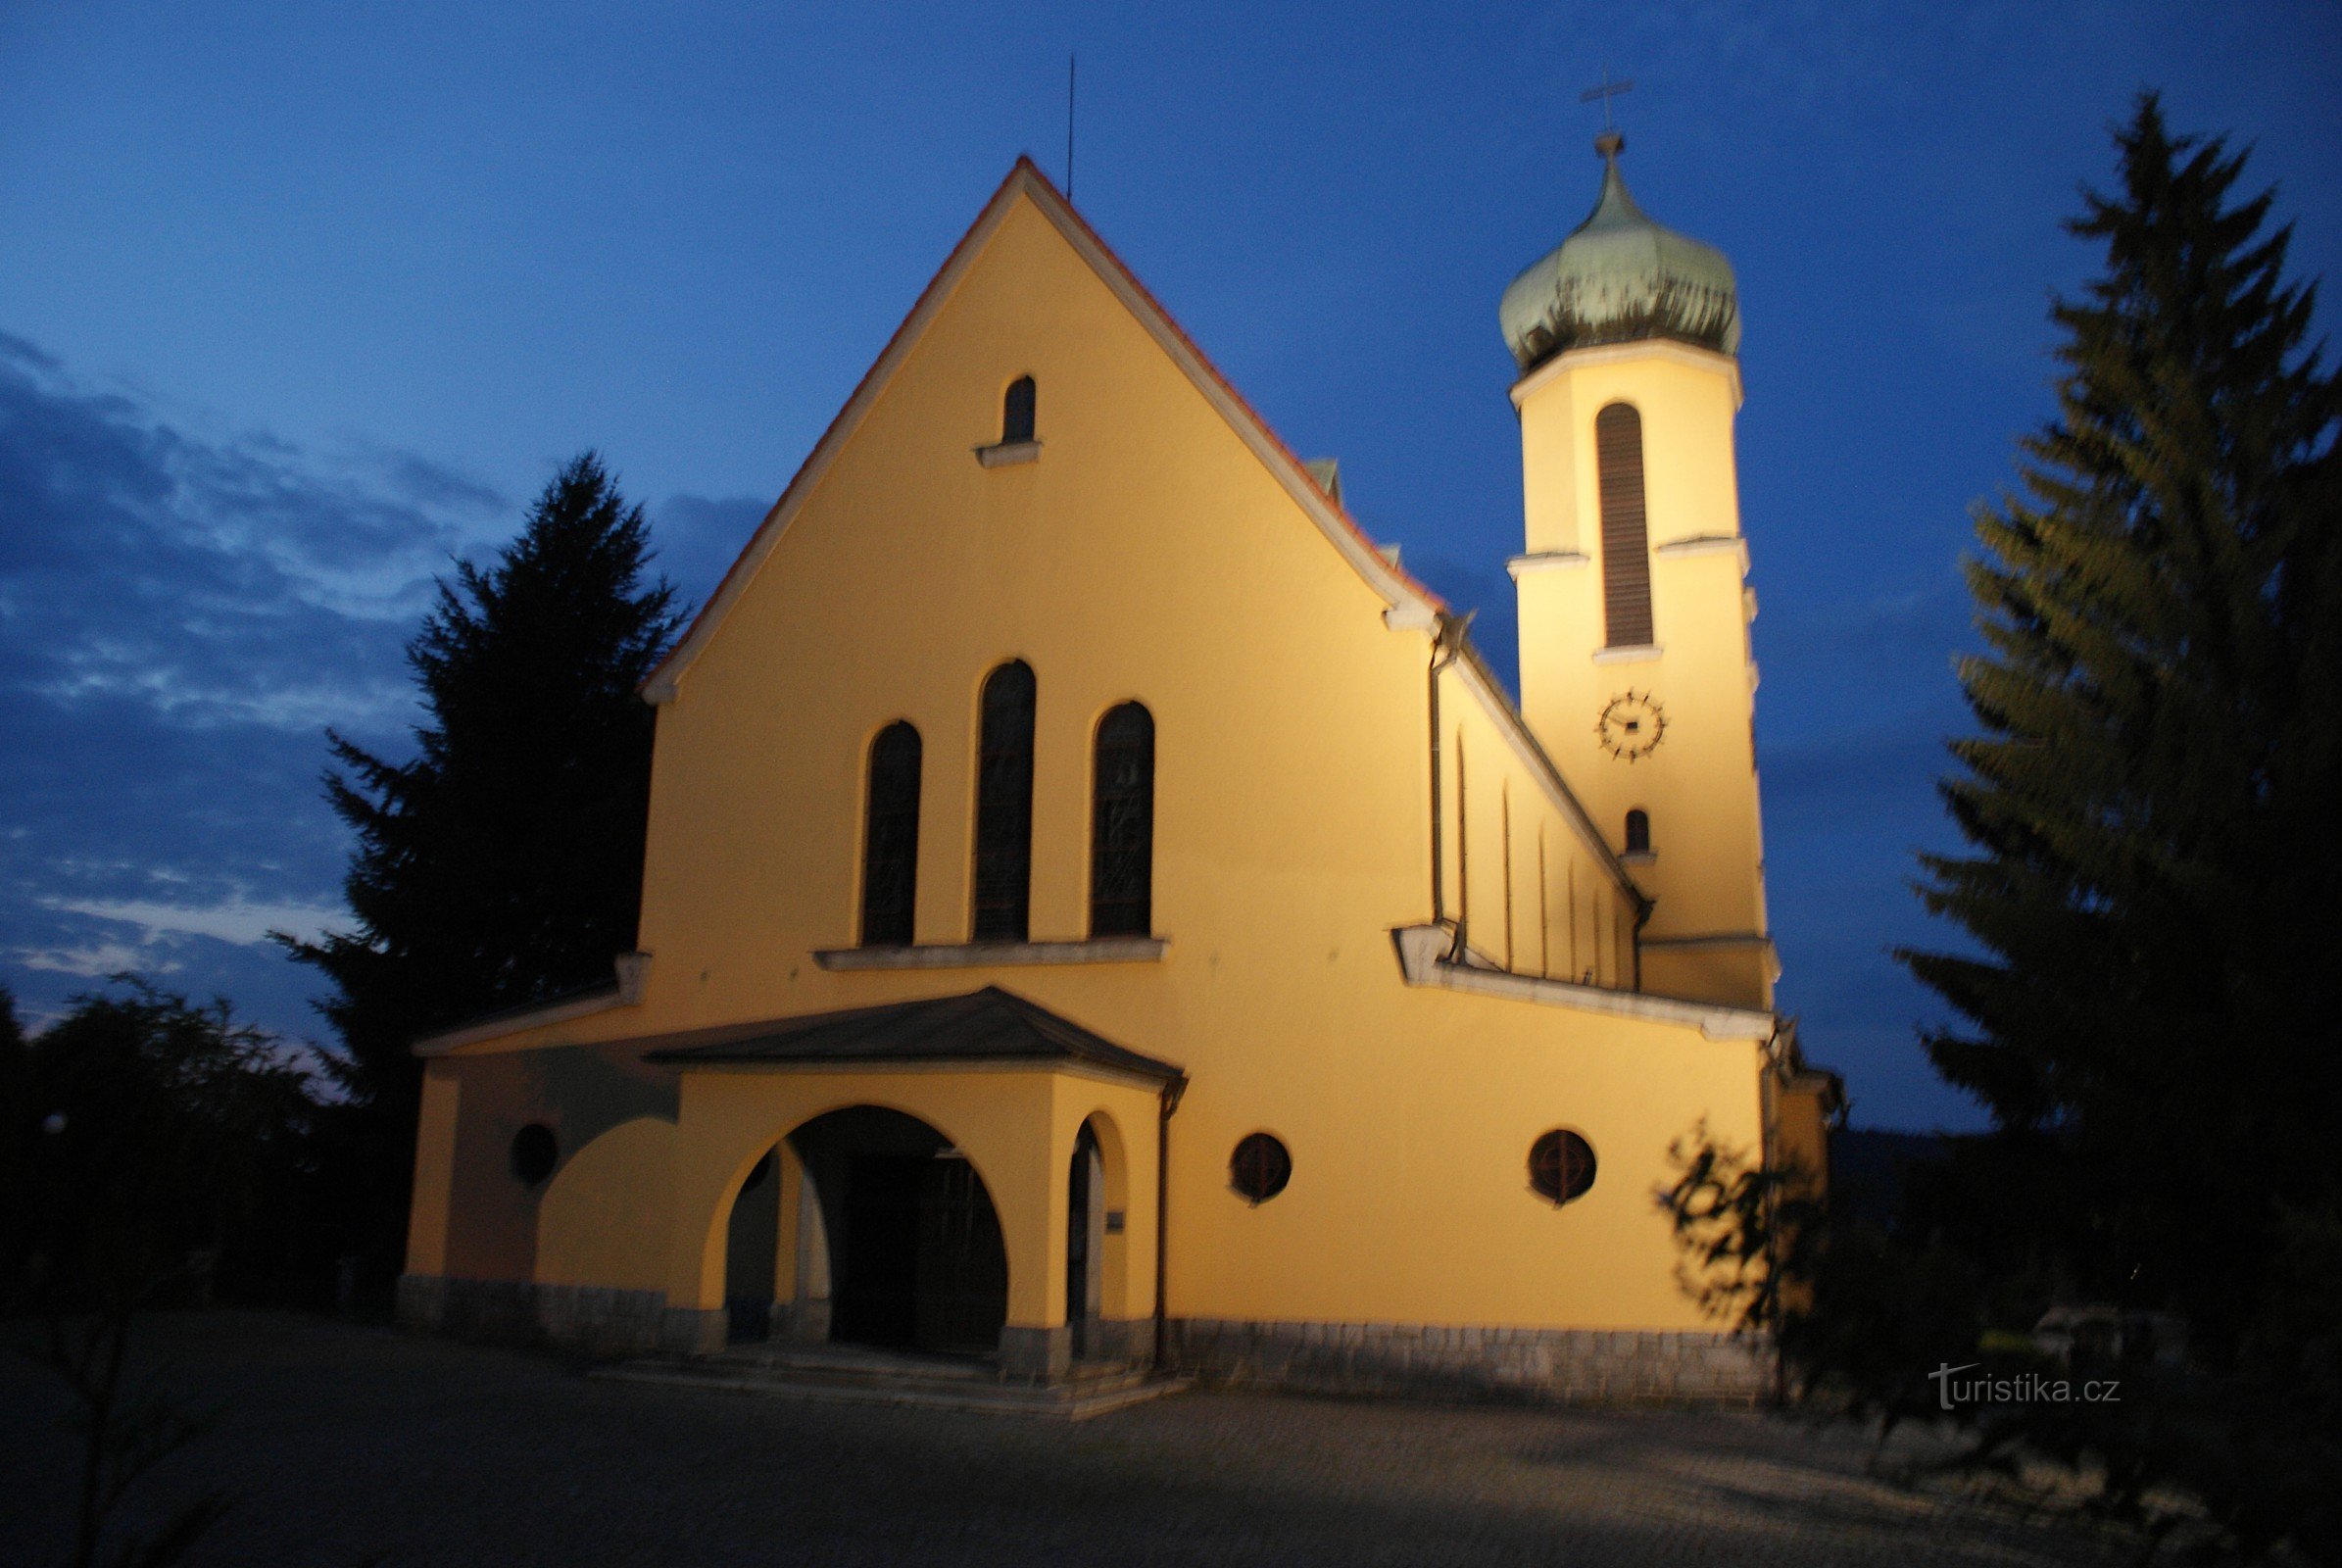 Vétrní - kerk van St. Jan Nepomucký